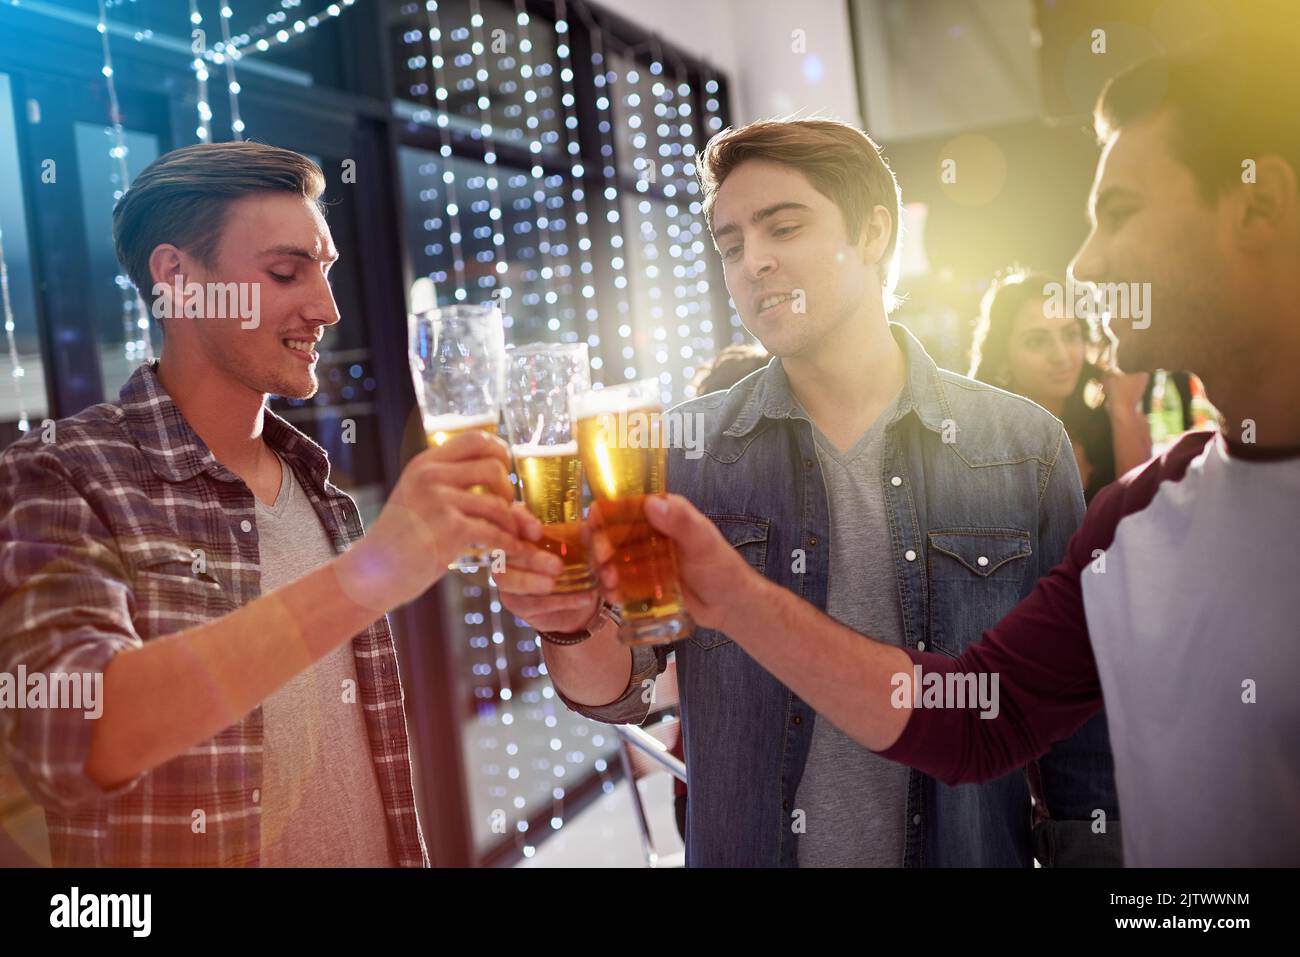 Heres ai ragazzi notte. Ragazzi brinda con le birre ad una festa. Foto Stock